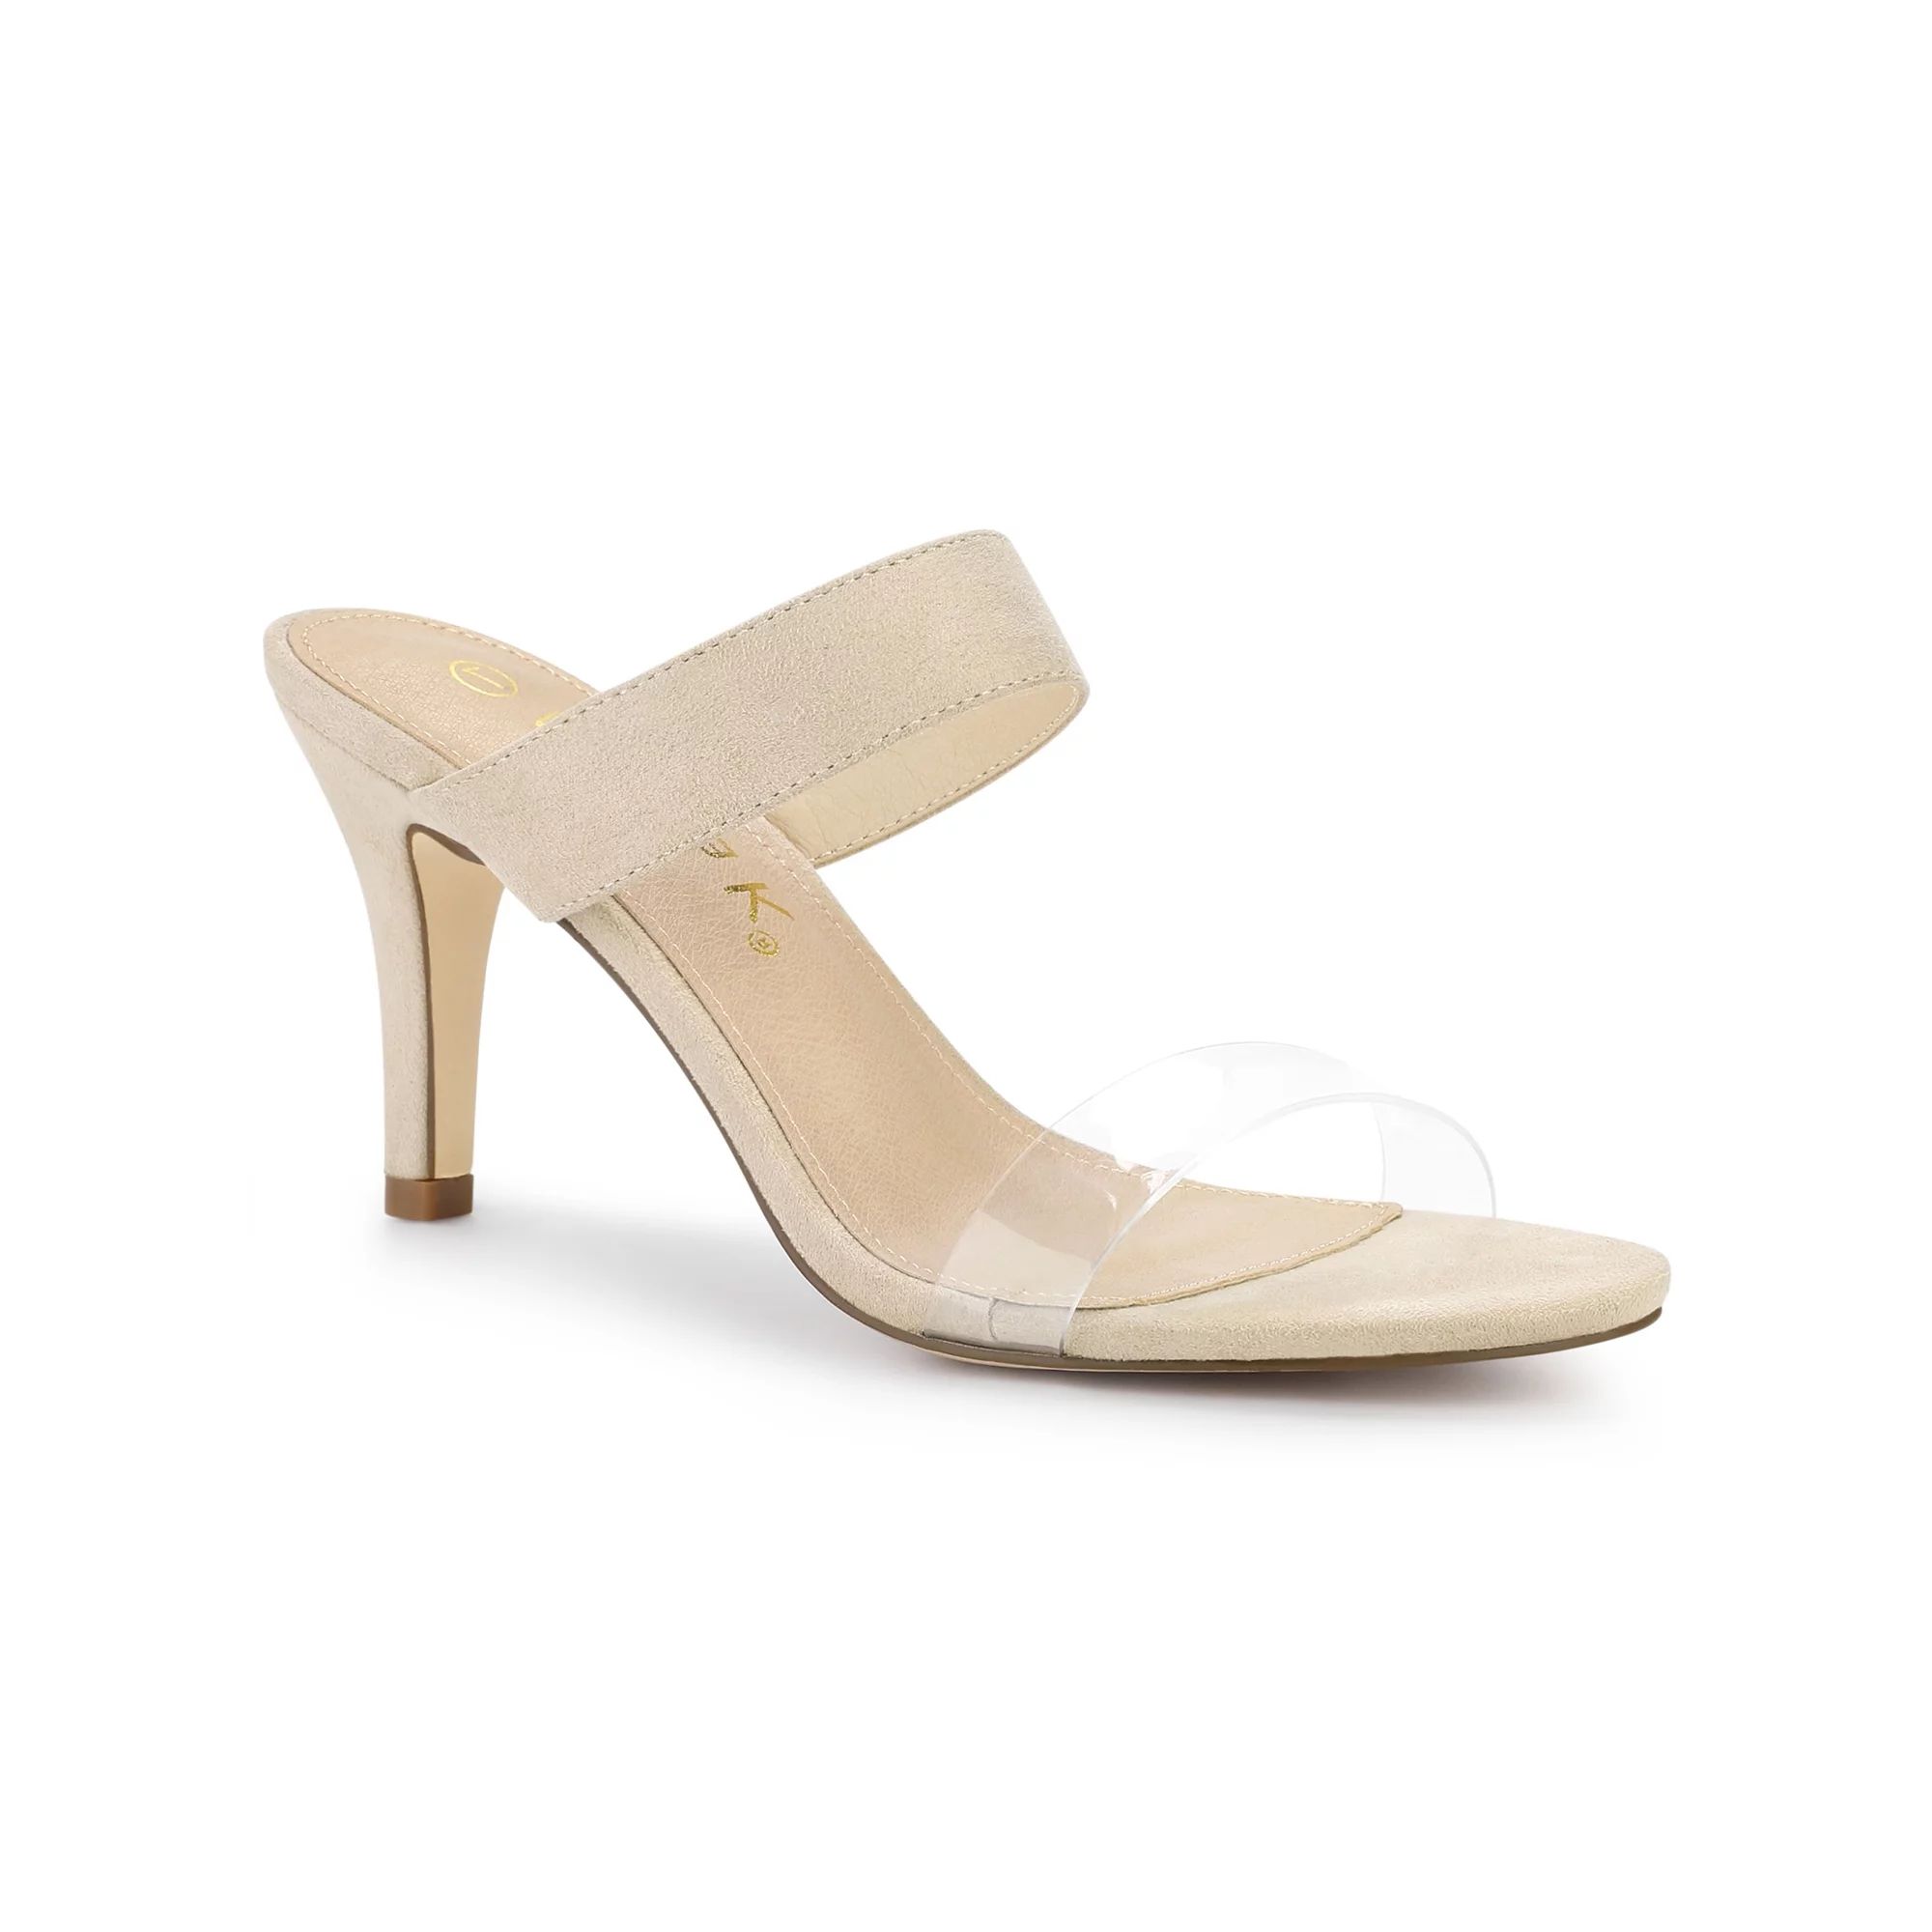 Allegra K Women's Sandals Stiletto Heels Clear Strap High Heels Slides Sandals | Walmart (US)